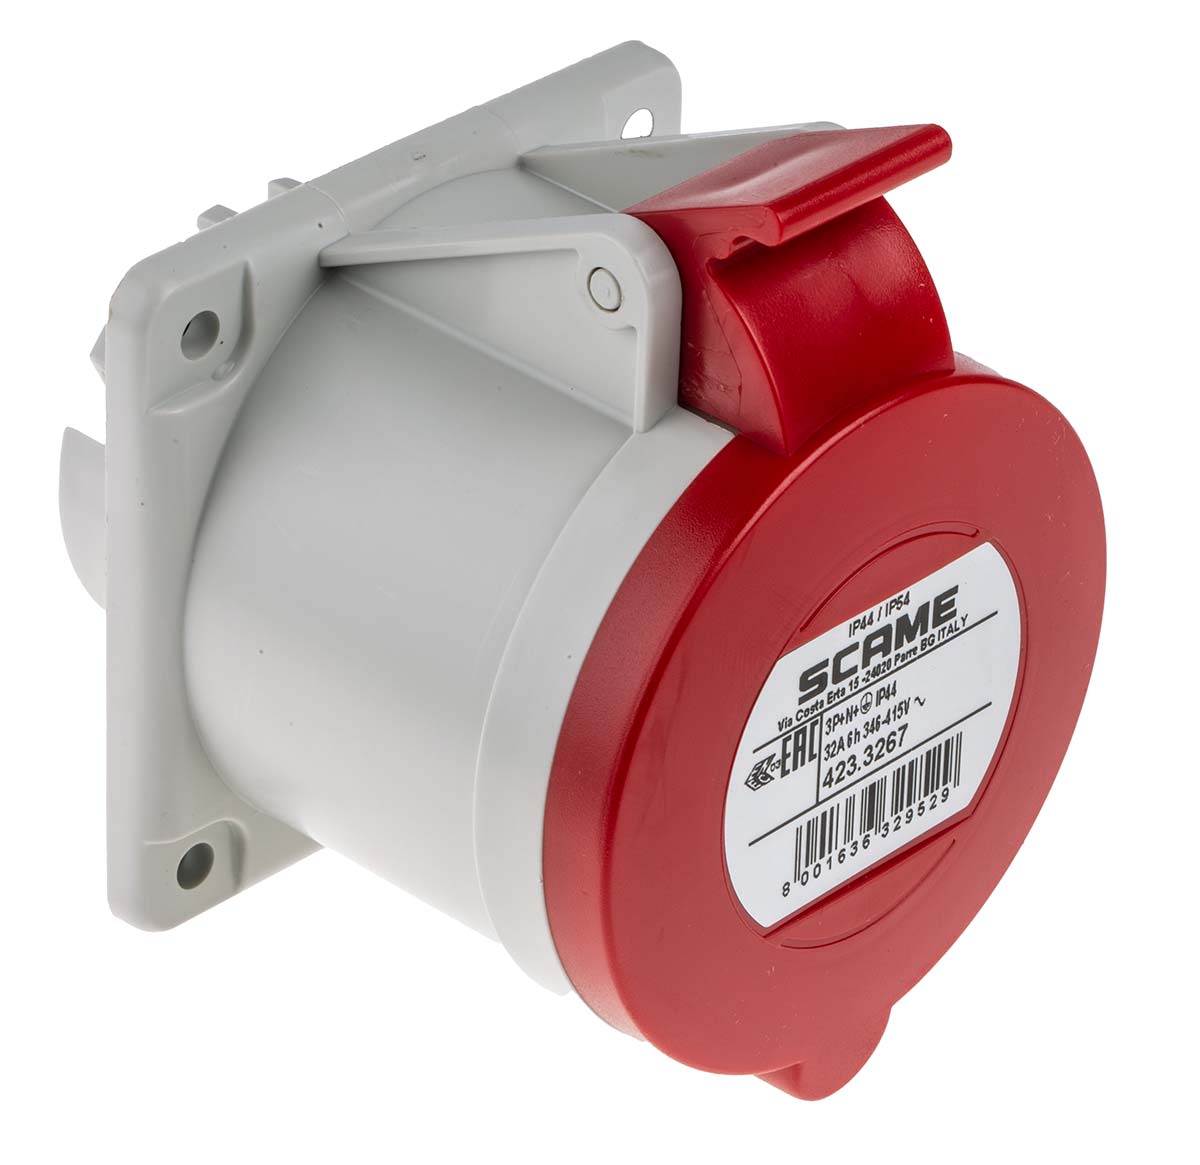 Conector de potencia industrial Hembra, Formato 3P+N+E, Orientación Recta, Rojo, 415,0 V., 32A, IP44